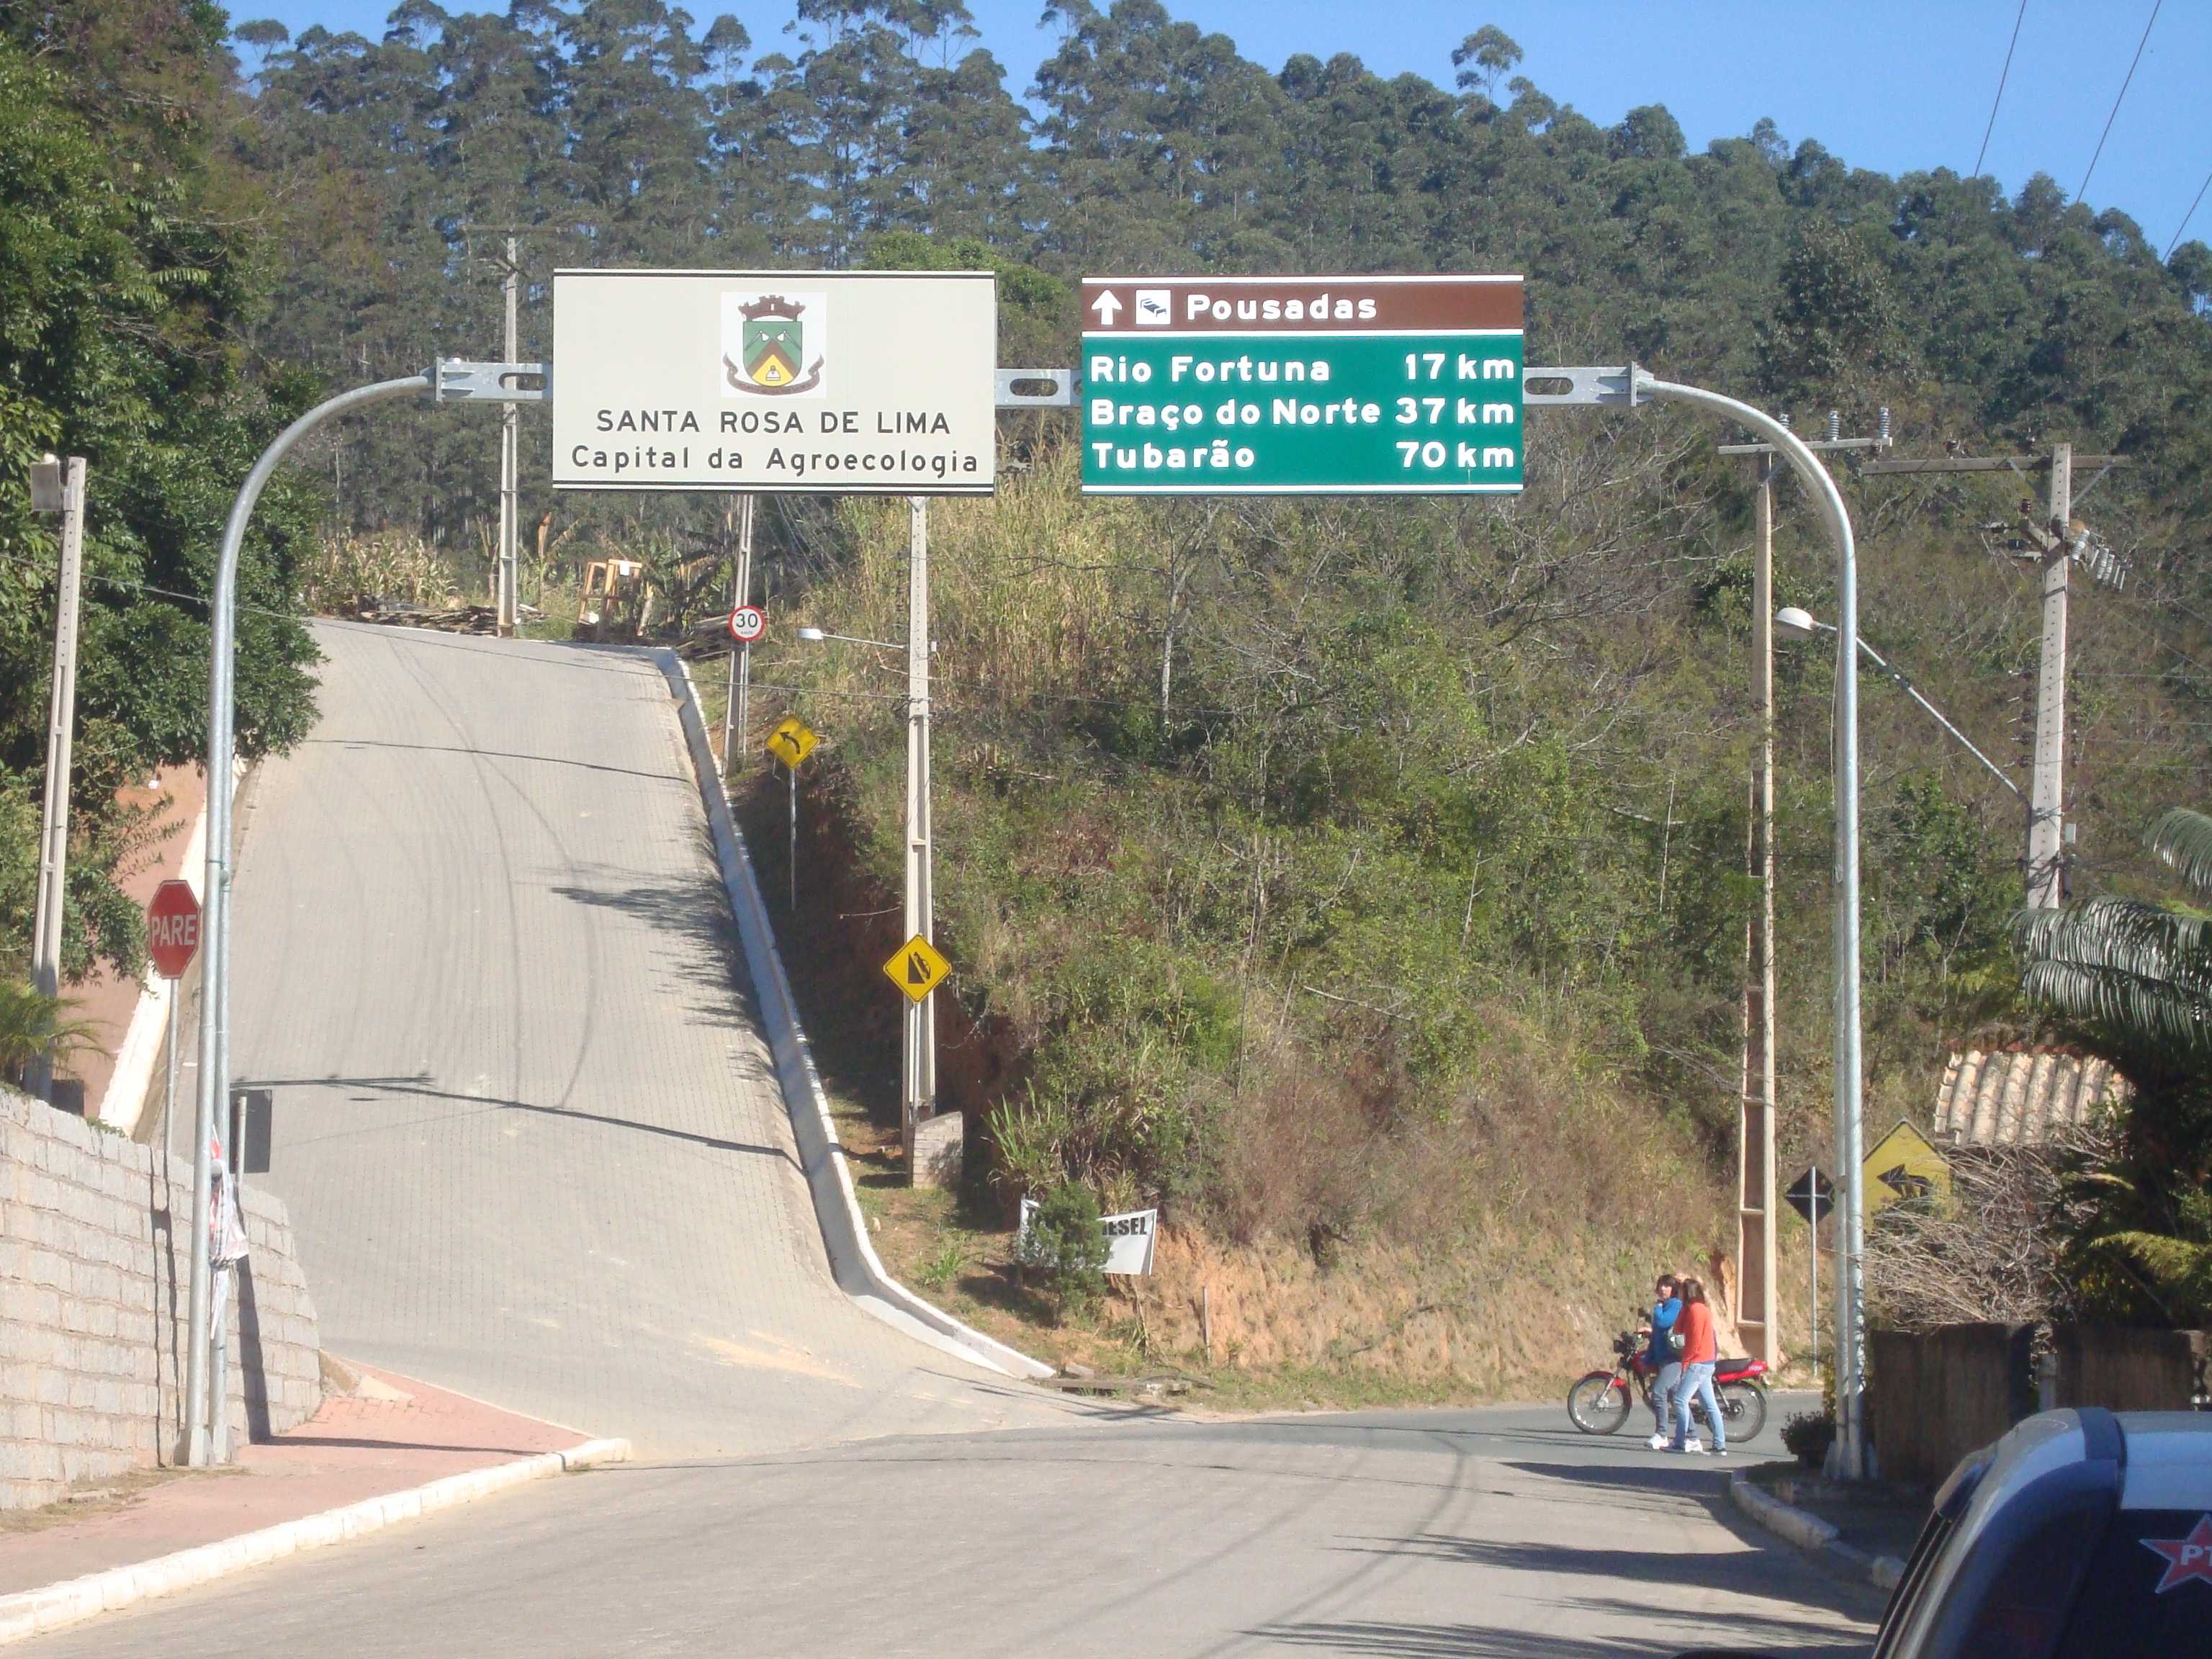 Próximos destinos Rio Fortuna e Braço do Norte, agora tudo asfalto...